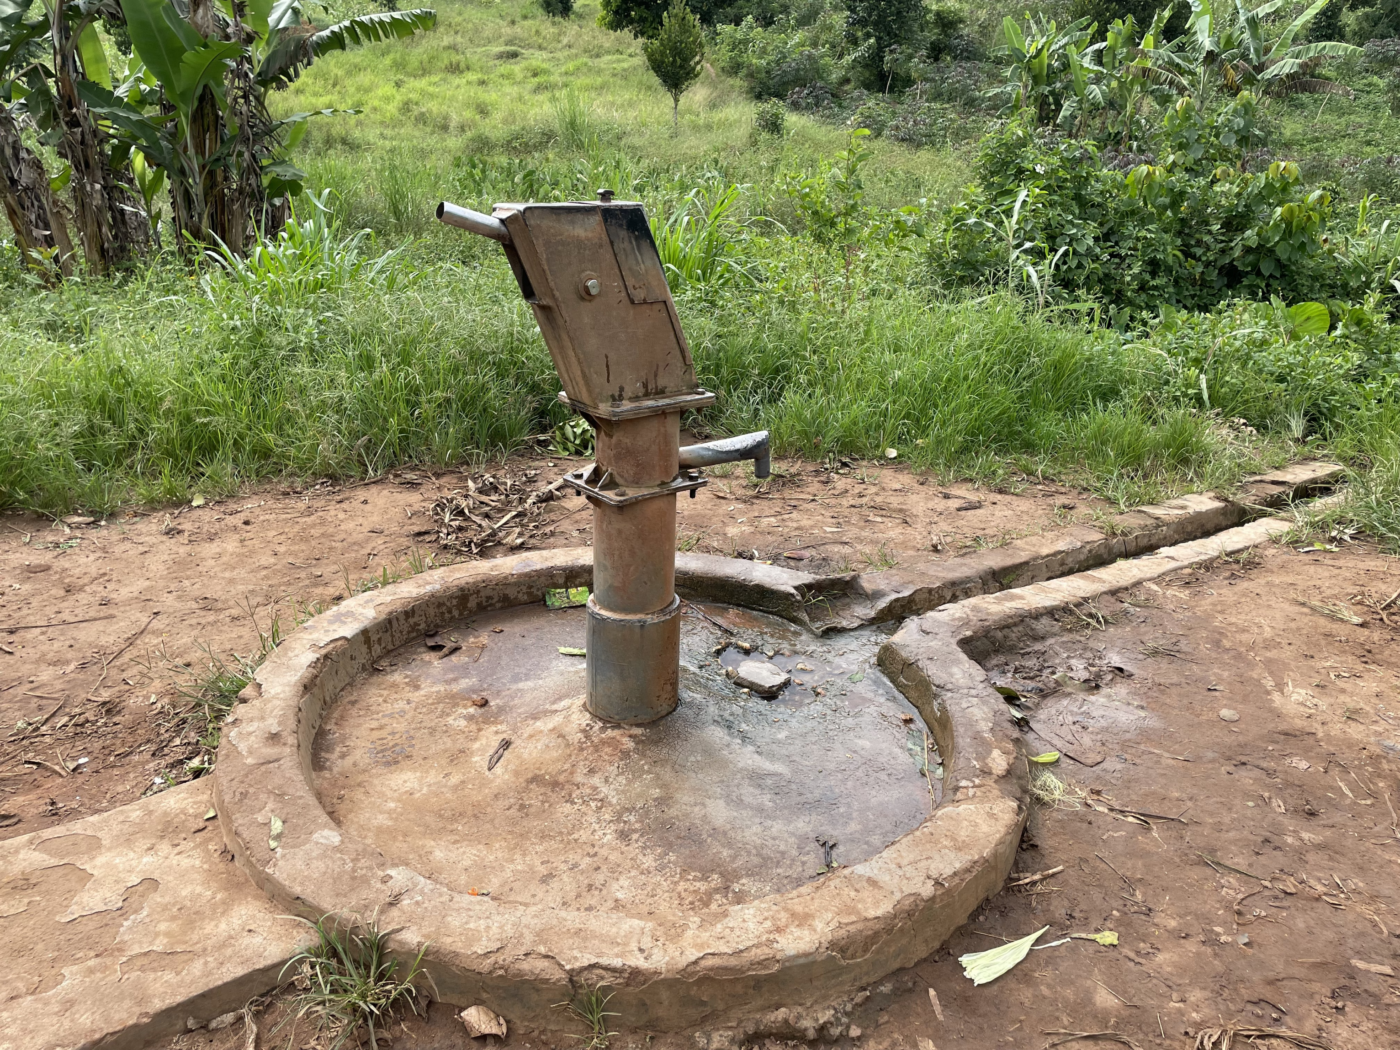 ハンドポンプが壊れた井戸。水がほとんど出ないため、使われなくなっている（ウガンダ、Sunda Technology Global提供）